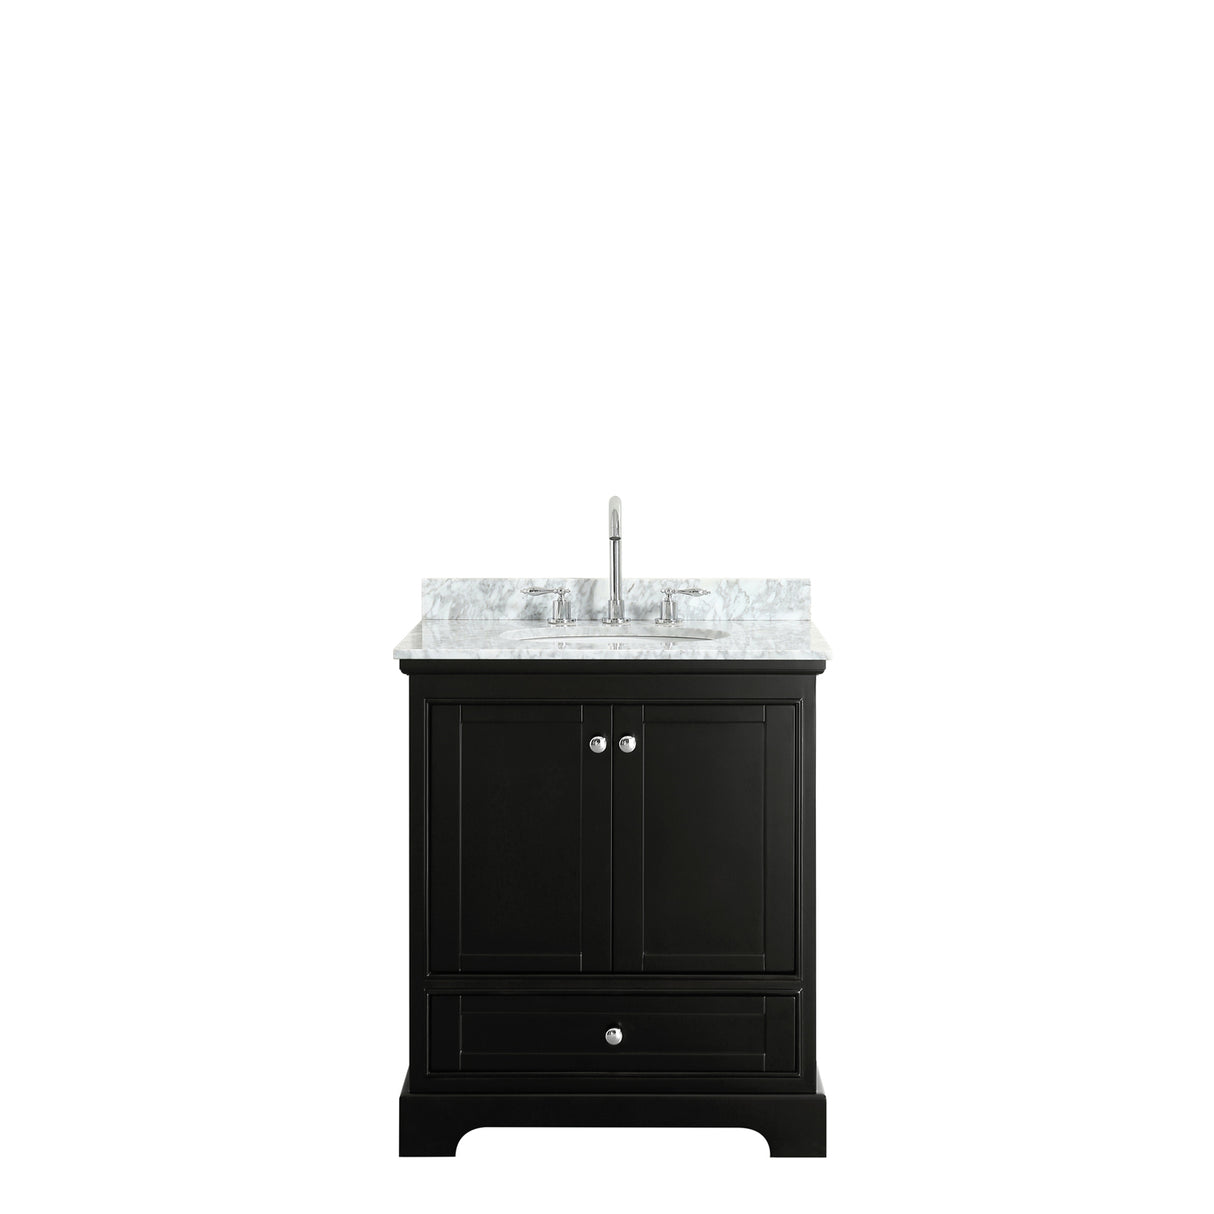 Deborah 30 Inch Single Bathroom Vanity in Dark Espresso White Carrara Marble Countertop Undermount Oval Sink and No Mirror